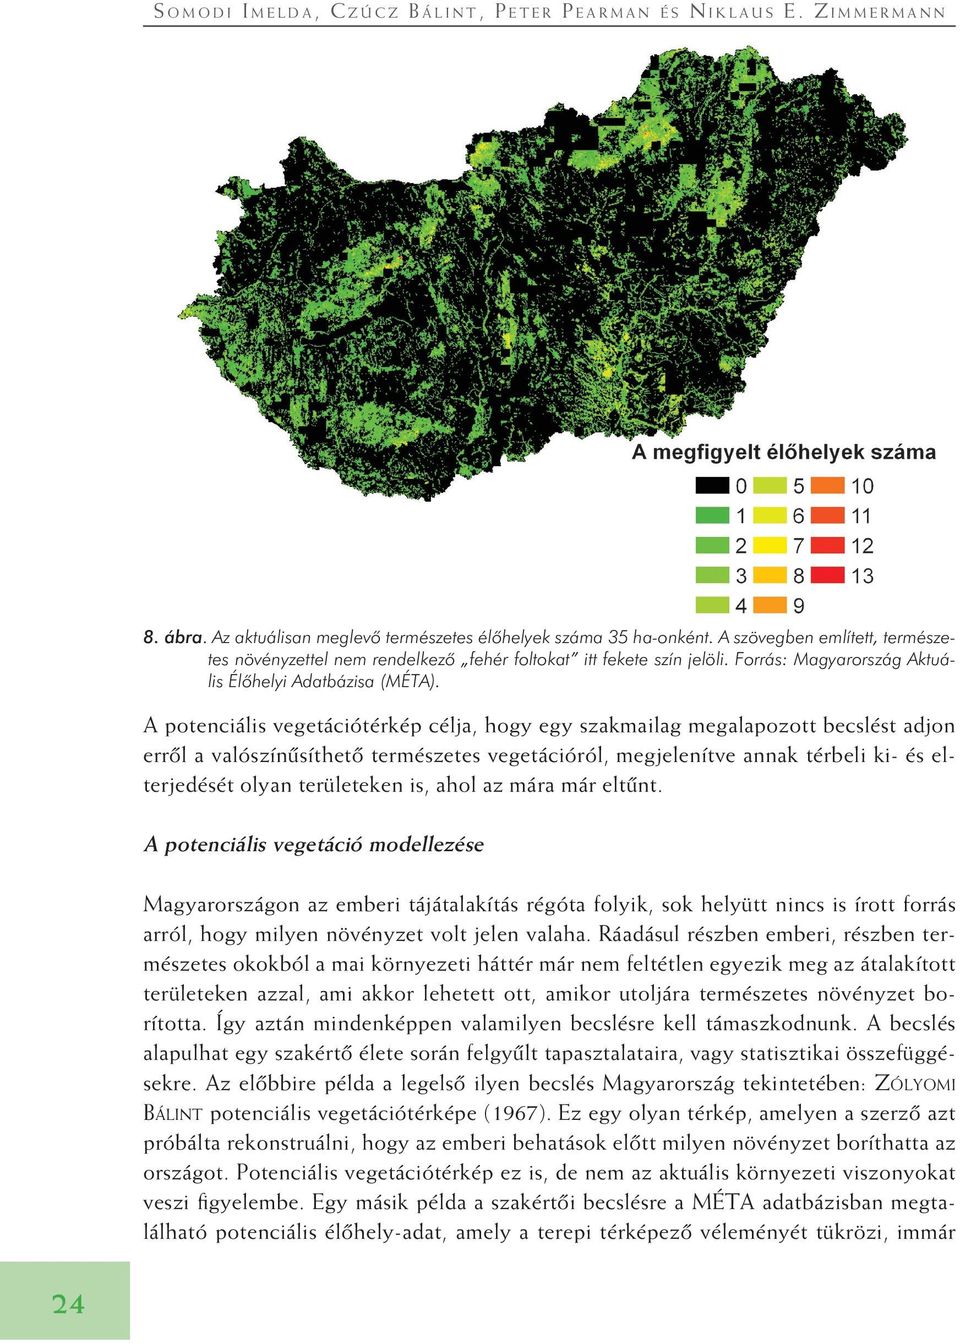 A potenciális vegetációtérkép célja, hogy egy szakmailag megalapozott becslést adjon errôl a valószínûsíthetô természetes vegetációról, megjelenítve annak térbeli ki- és elterjedését olyan